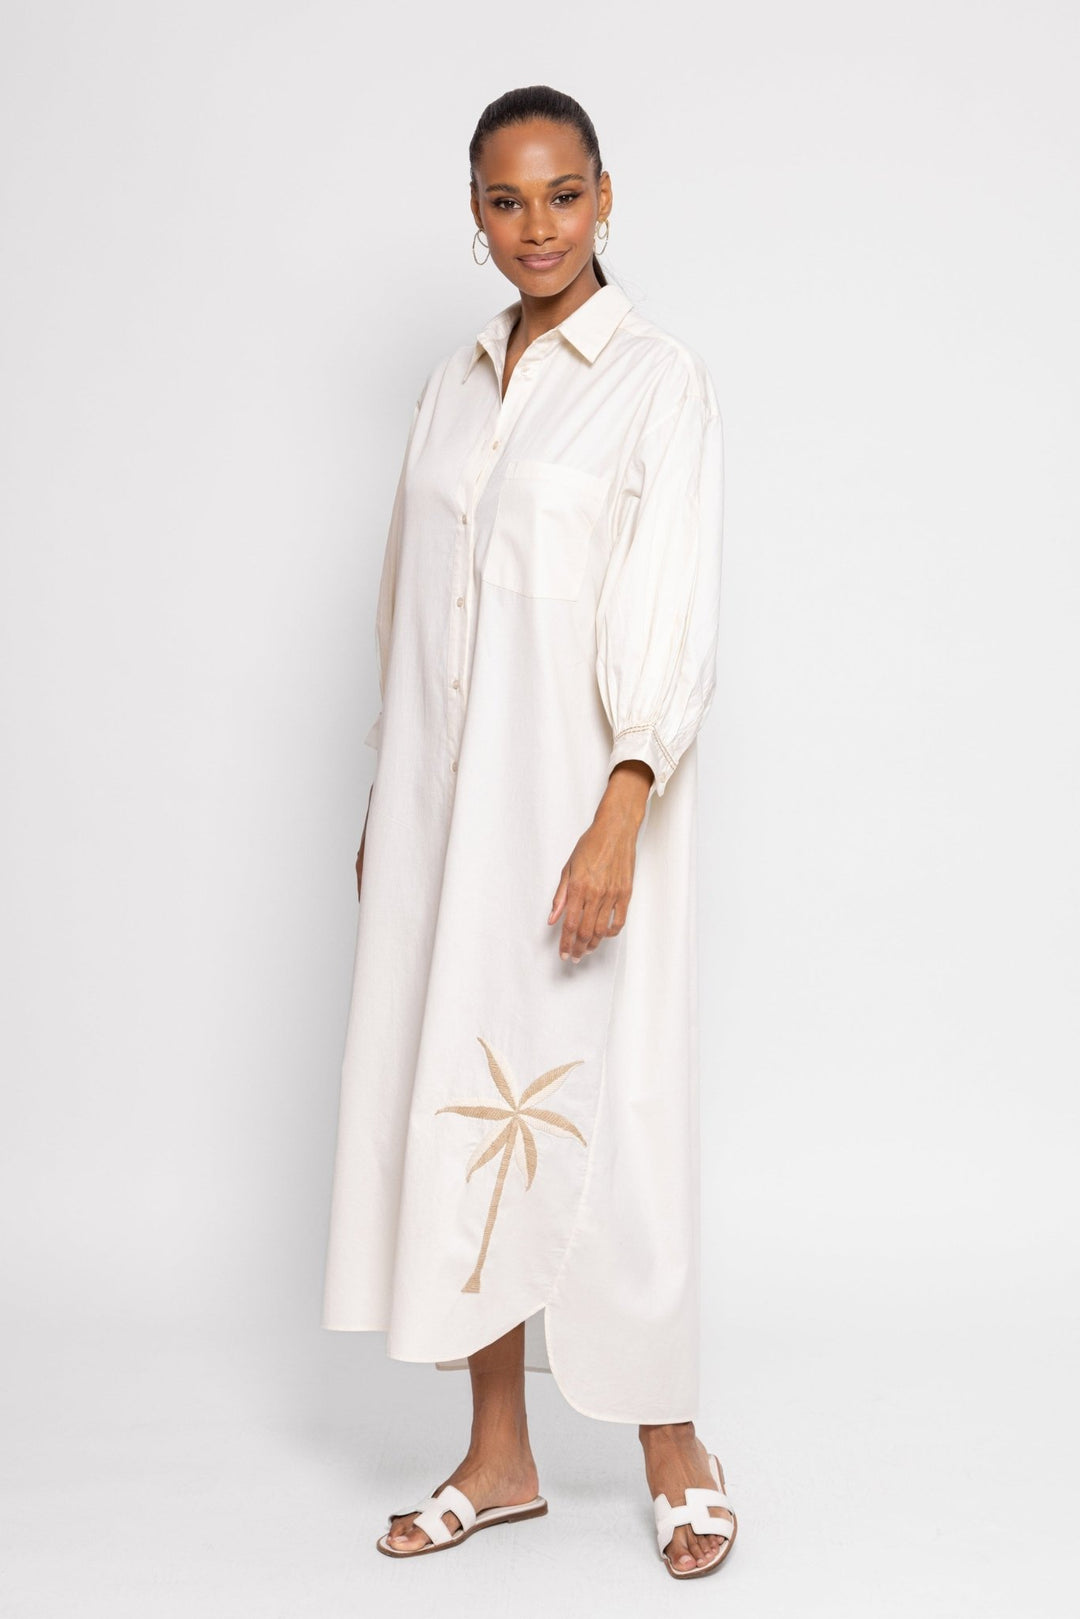 Sundress Regina Long Dress - White - Capri by Sunset & Co.